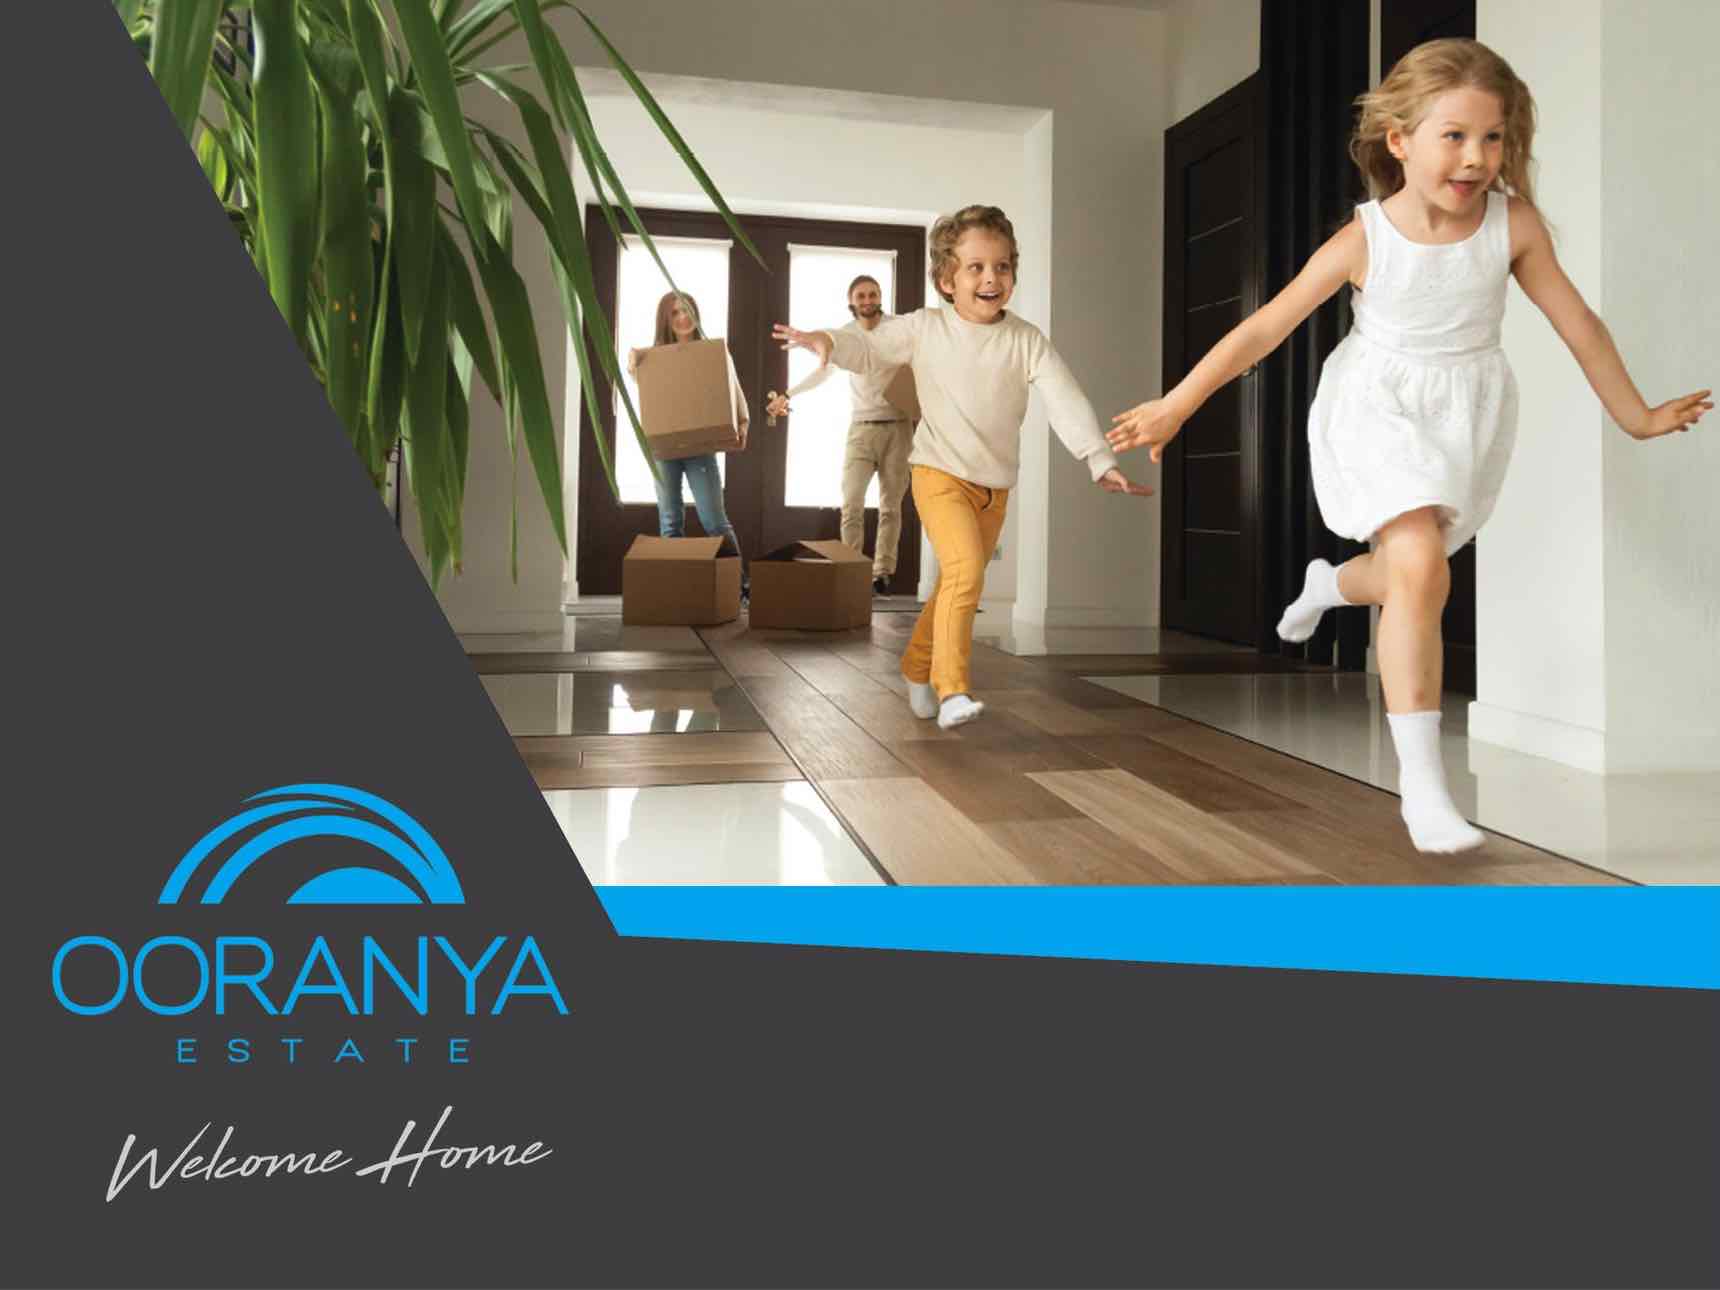 Ooranya Estate - Beveridge Kids